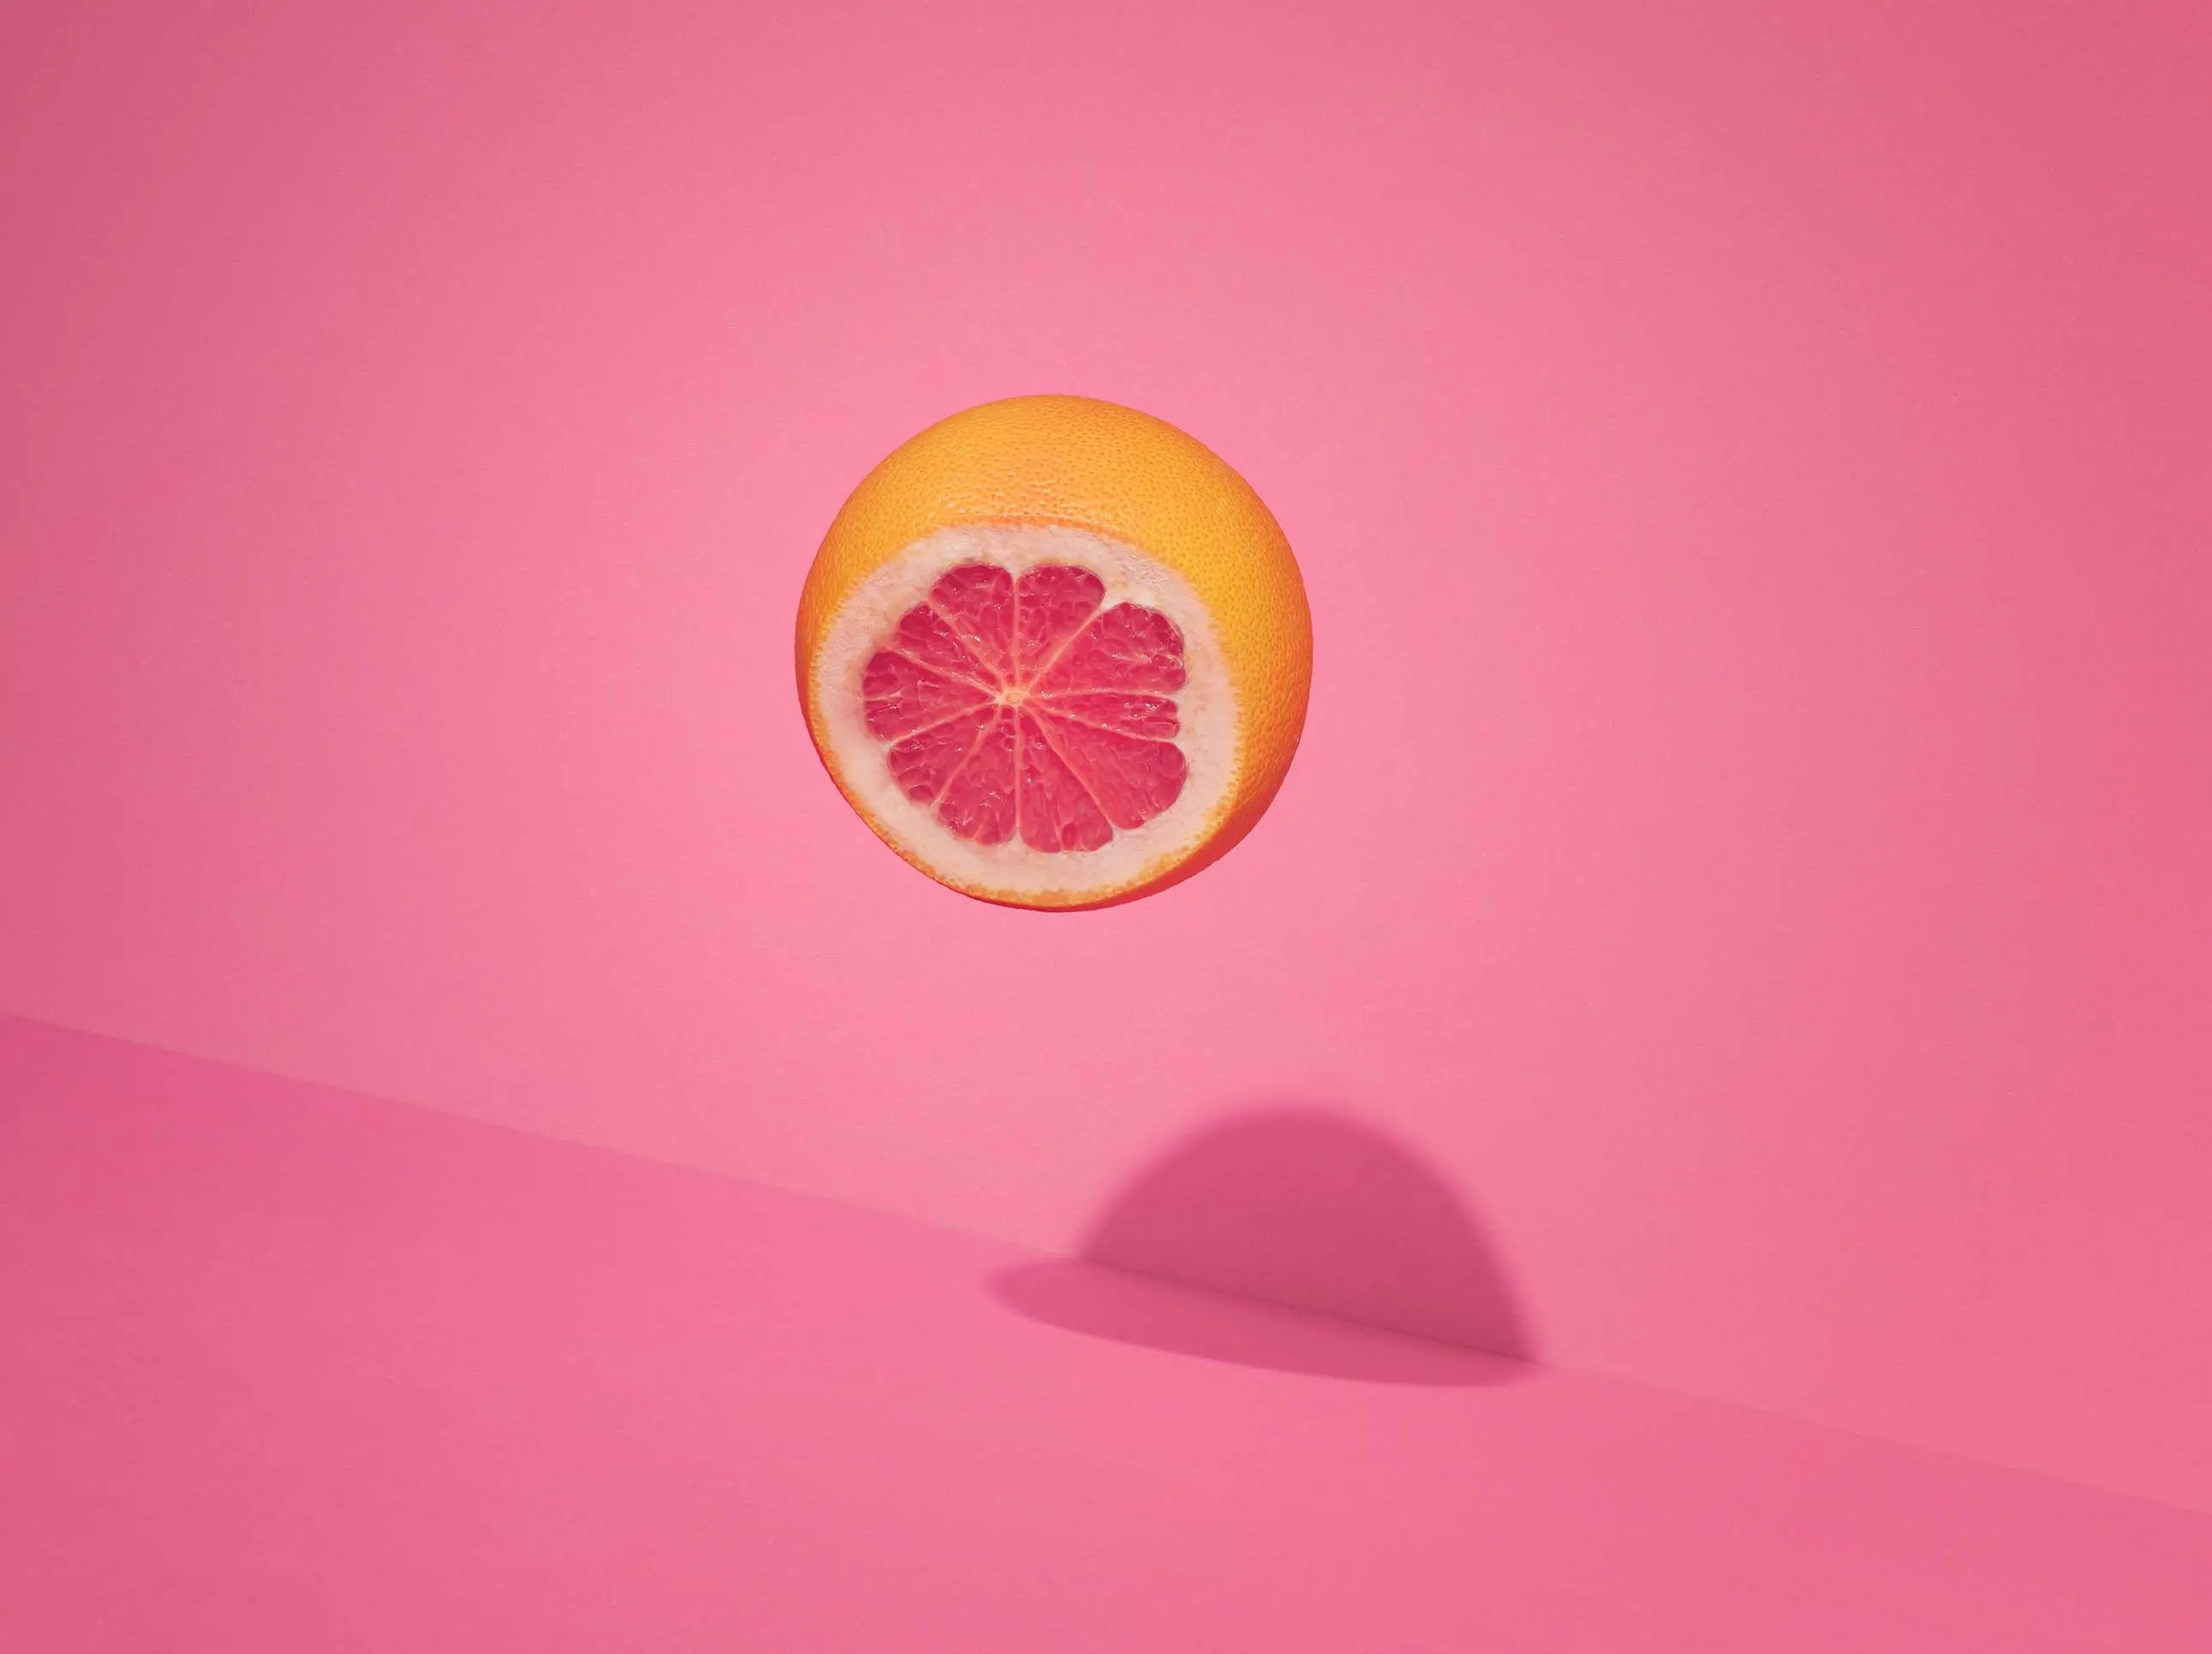 Pink Grapefruit Pods